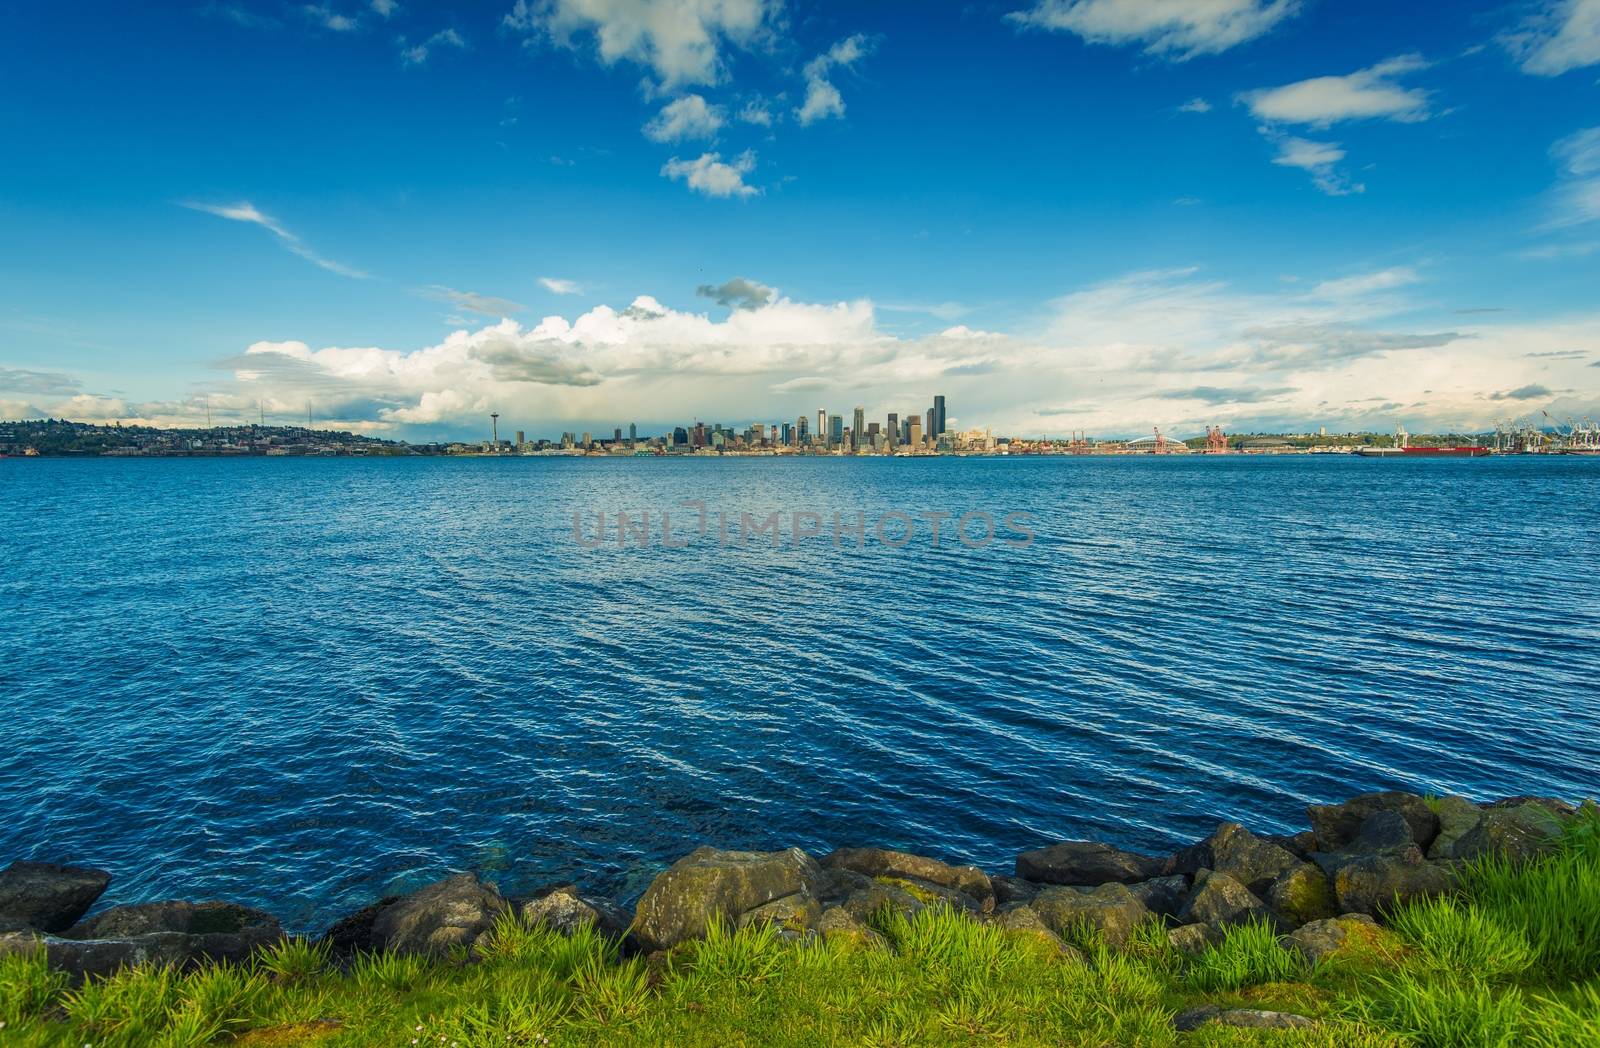 Seattle Skyline Panorama and Puget Sound. Seattle, Washington, United States.